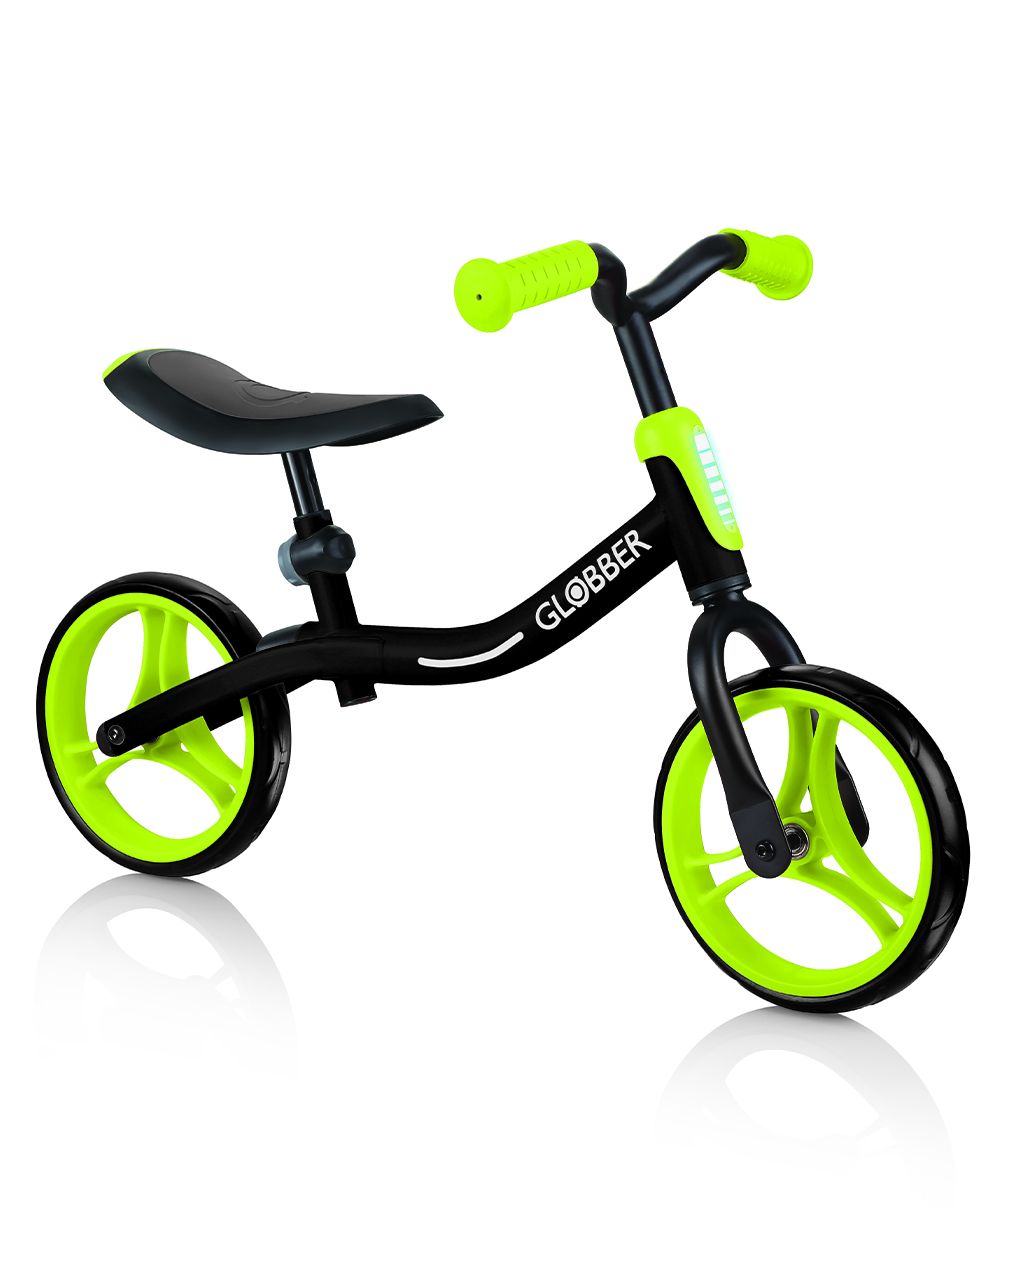 Globber - vá de bicicleta - preto / verde limão - Globber